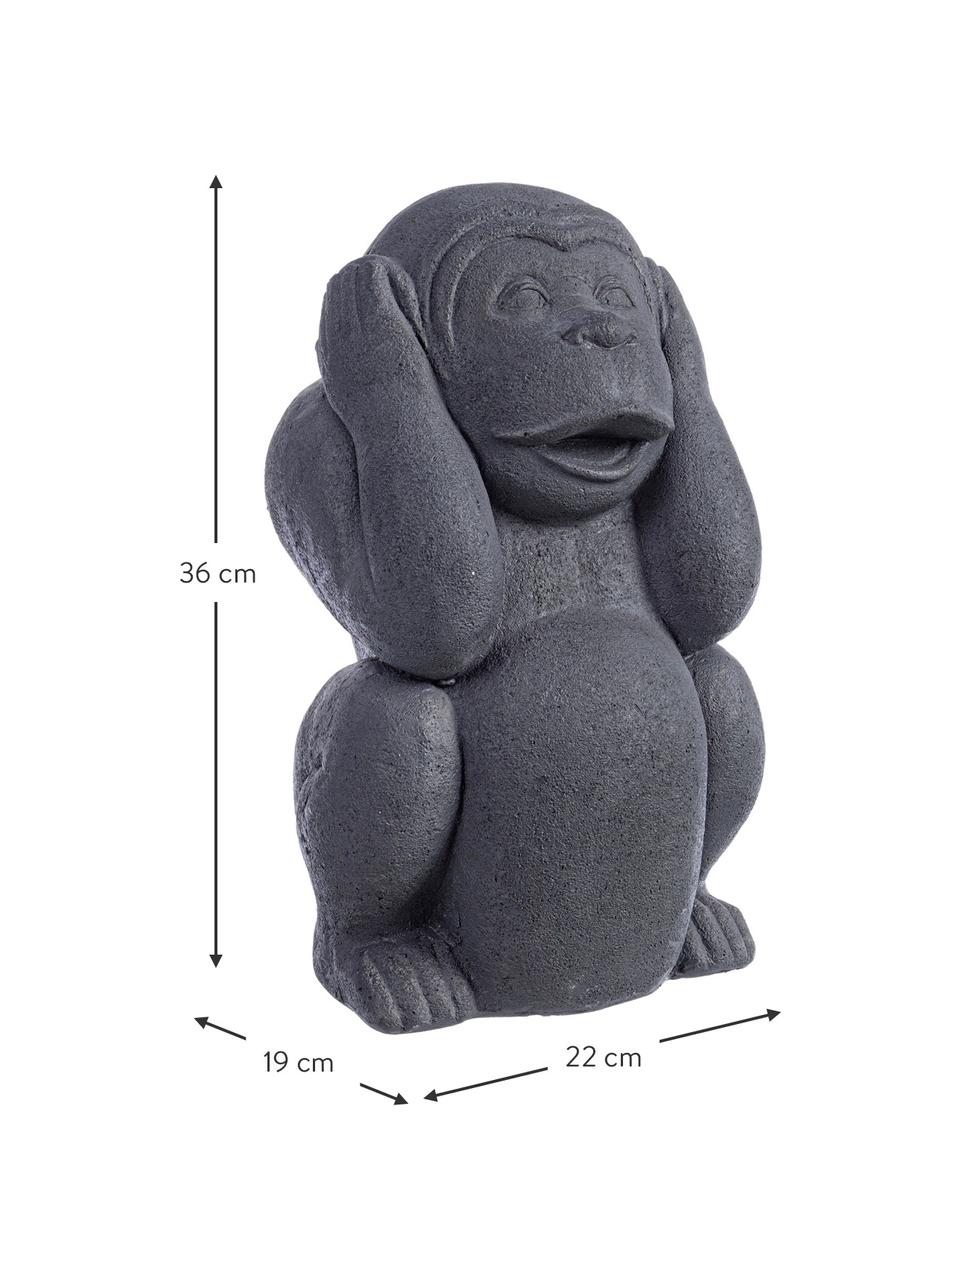 Objet décoratif béton Monkey, Béton, enduit, N'écoutez aucun singe maléfique, larg. 22 x haut. 36 cm